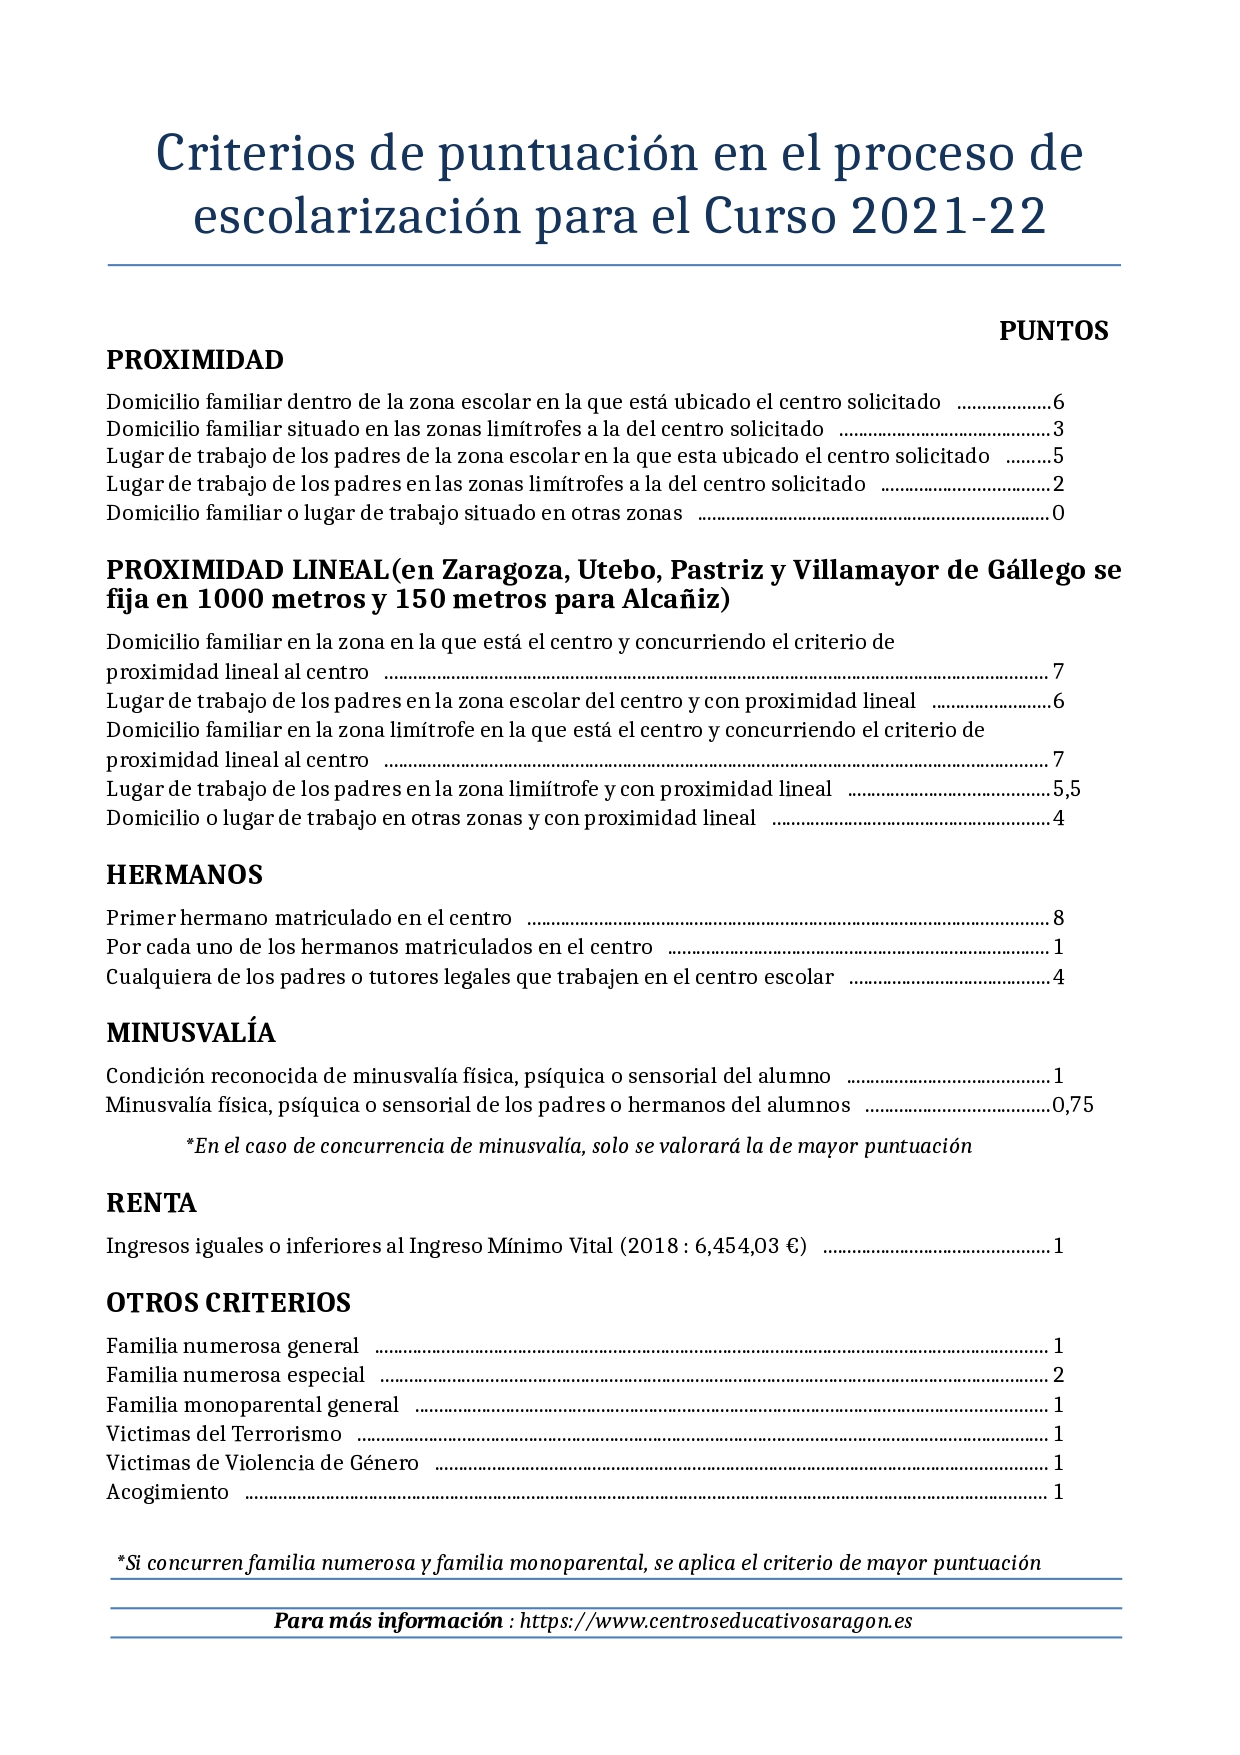 Escolarizacion 2021-22, Aragon